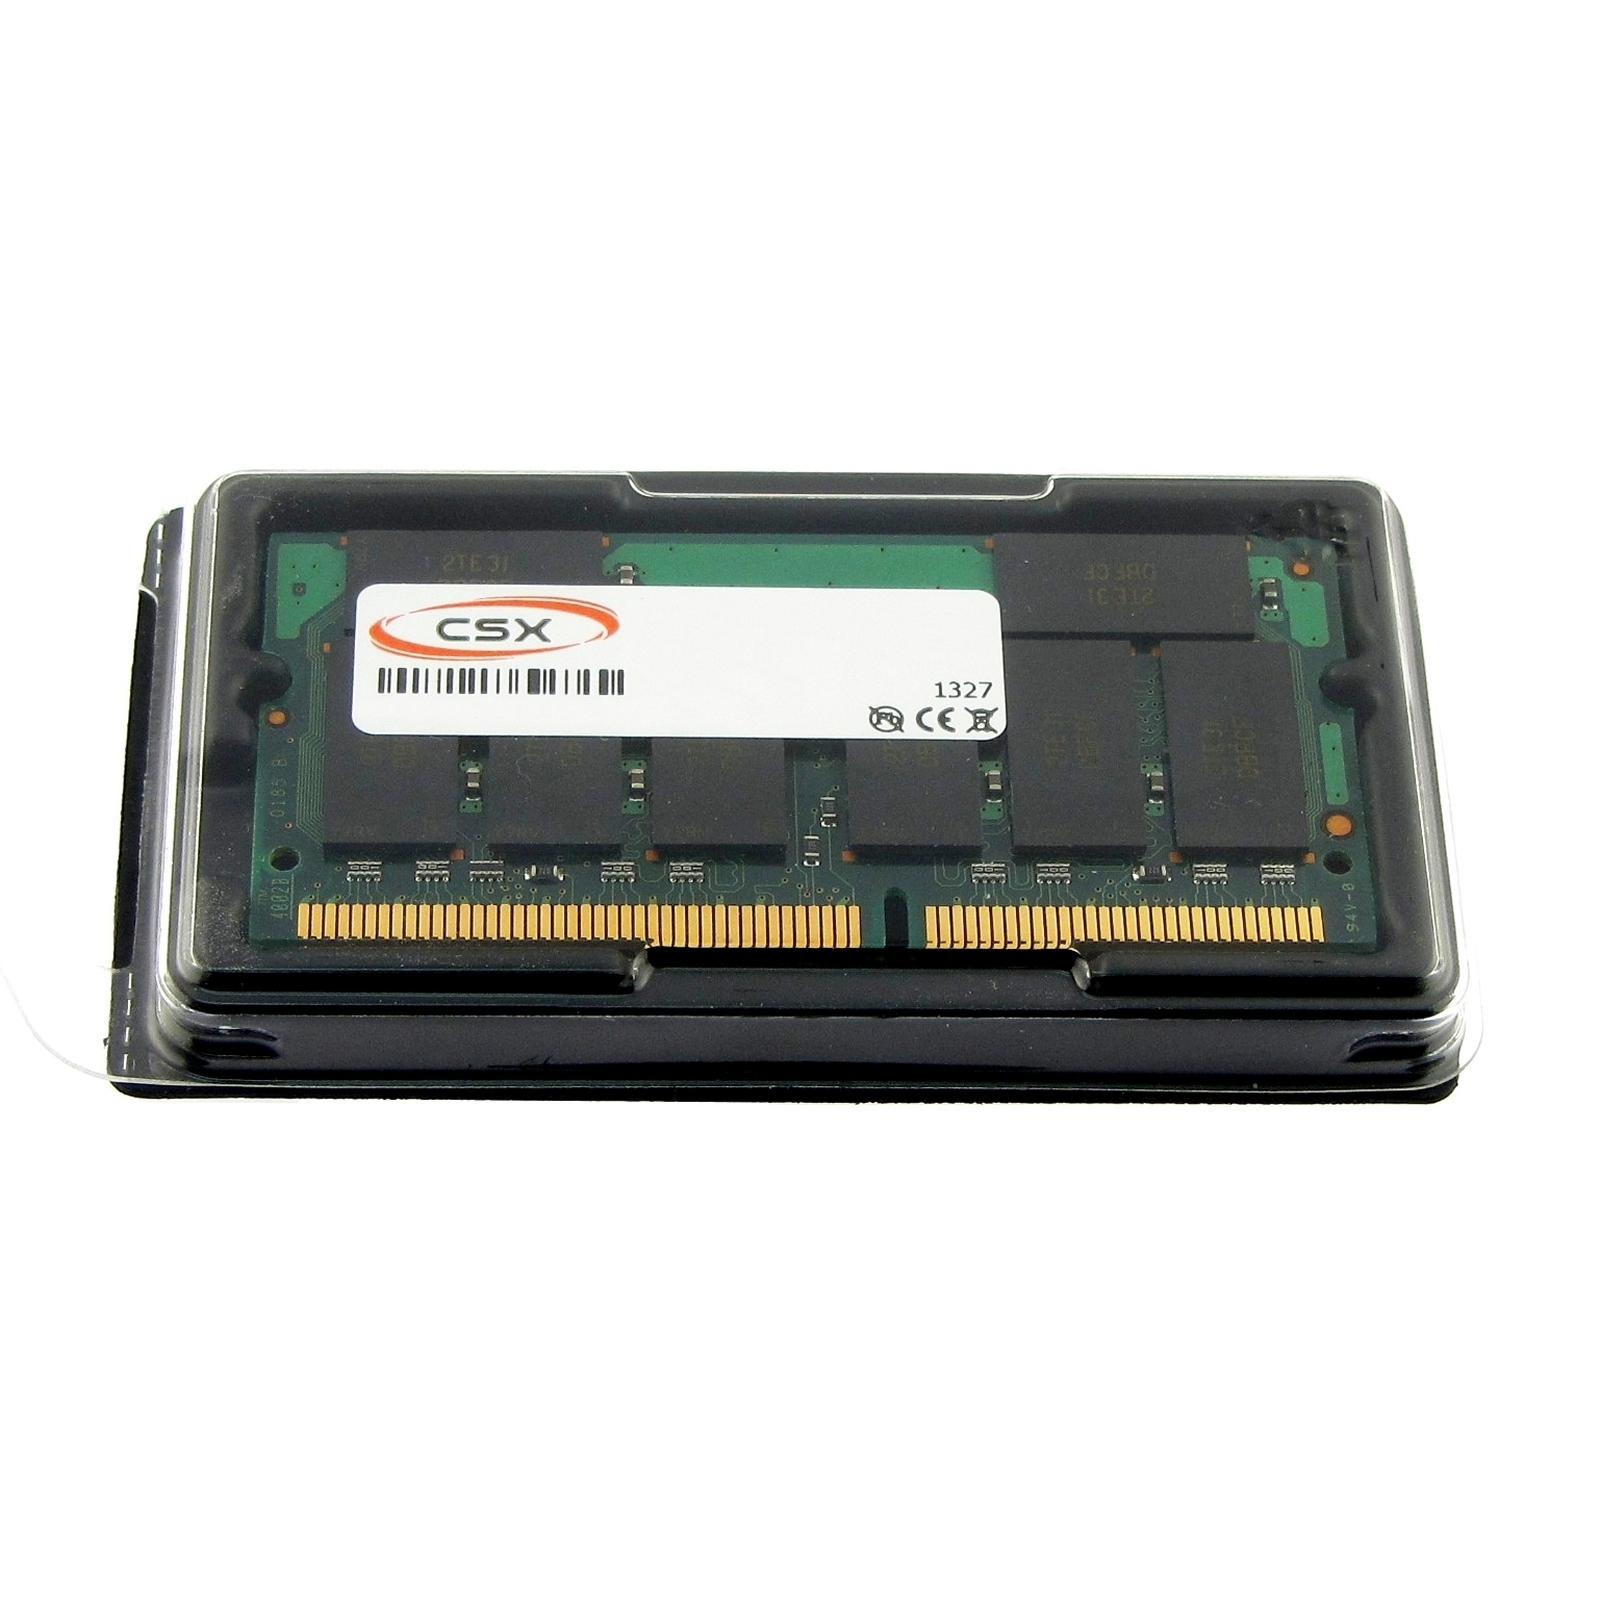 SDRAM 512 Meisterstück!) MTXTEC MB 2030XL MB Notebook-Speicher Arbeitsspeicher Masterpiece SDRAM 512 GERICOM (nicht RAM für